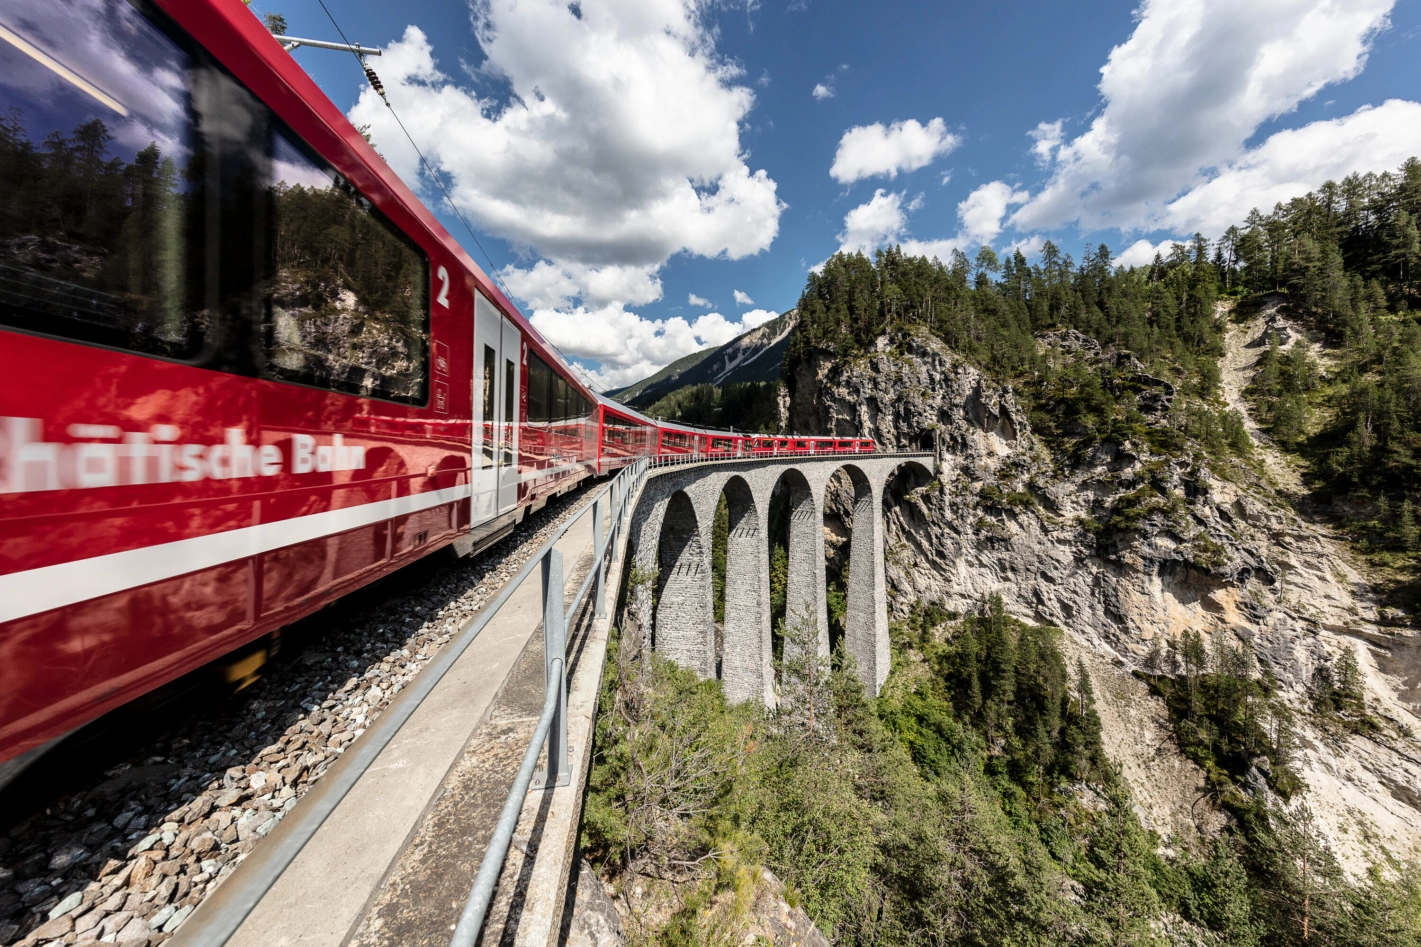 Die Rhätische Bahn betreibt unter anderem die UNESCO Welterbe-Strecke Albula-Bernina, welche zahlreiche unterhaltsintensive Ingenieurbauten aufweist. Foto: zvg